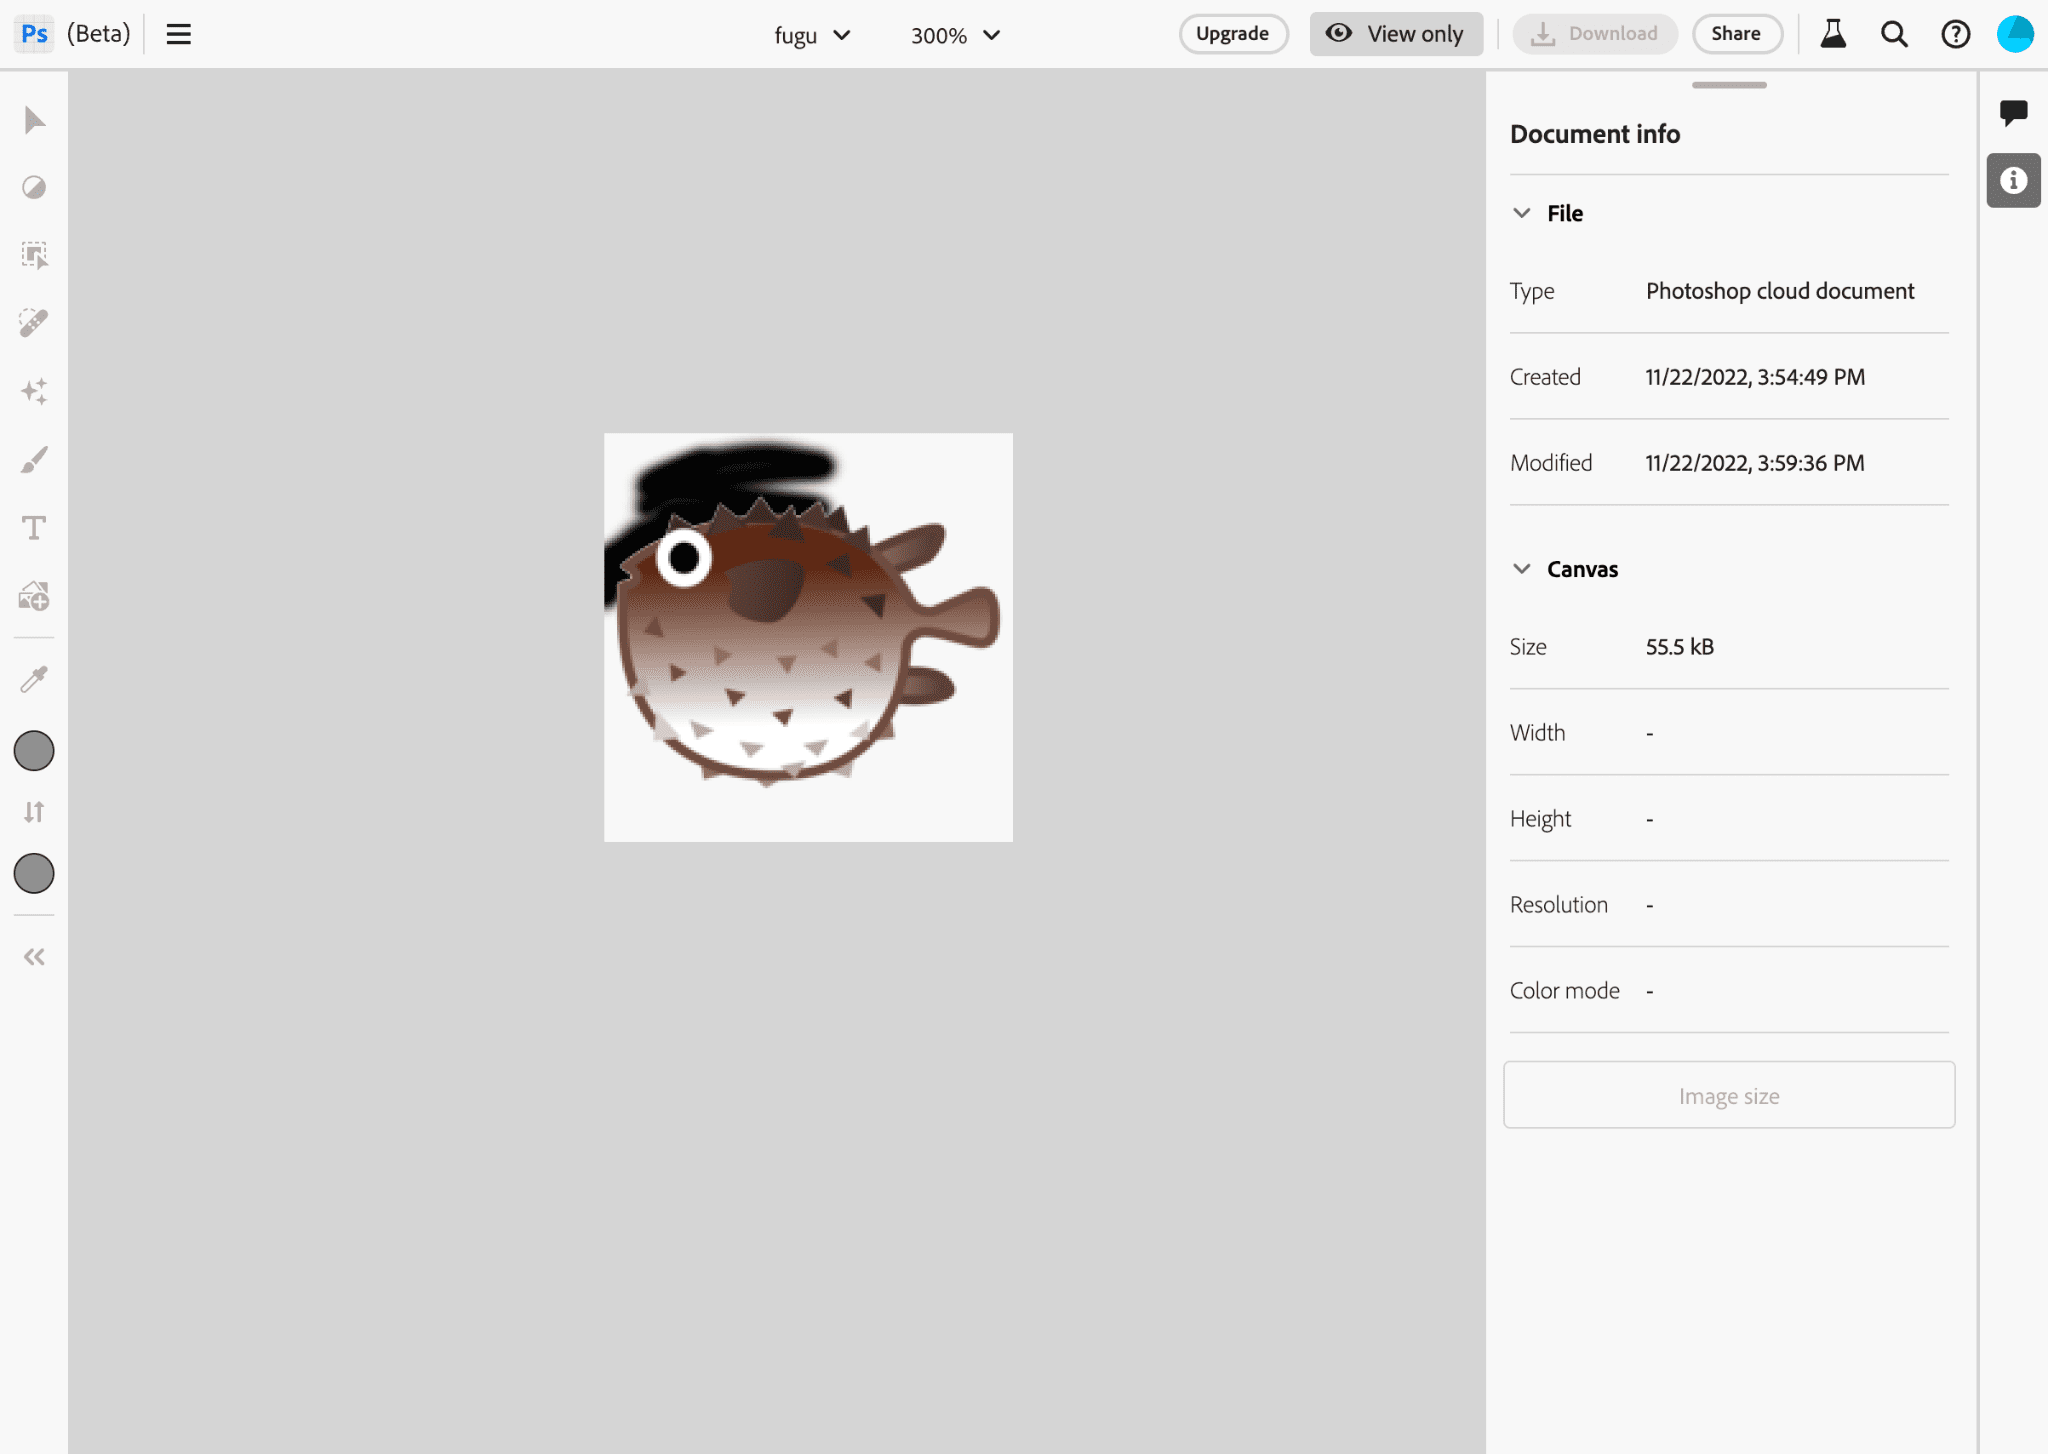 Aplikacja Photoshop podczas edytowania obrazu logo Project Fugu.